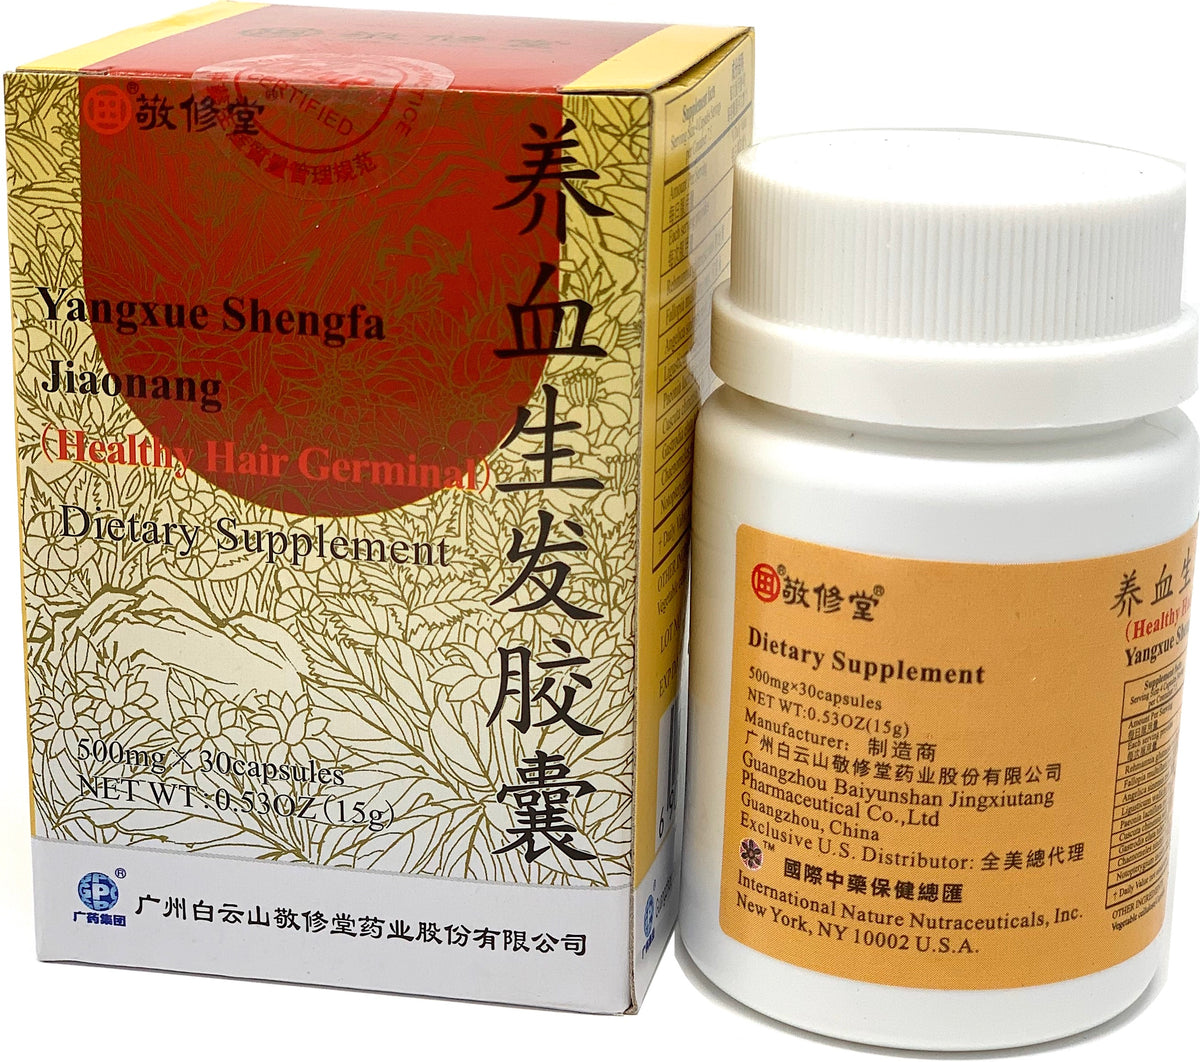 Healthy Hair Germinal (YangXue ShengFa JiaoNang)